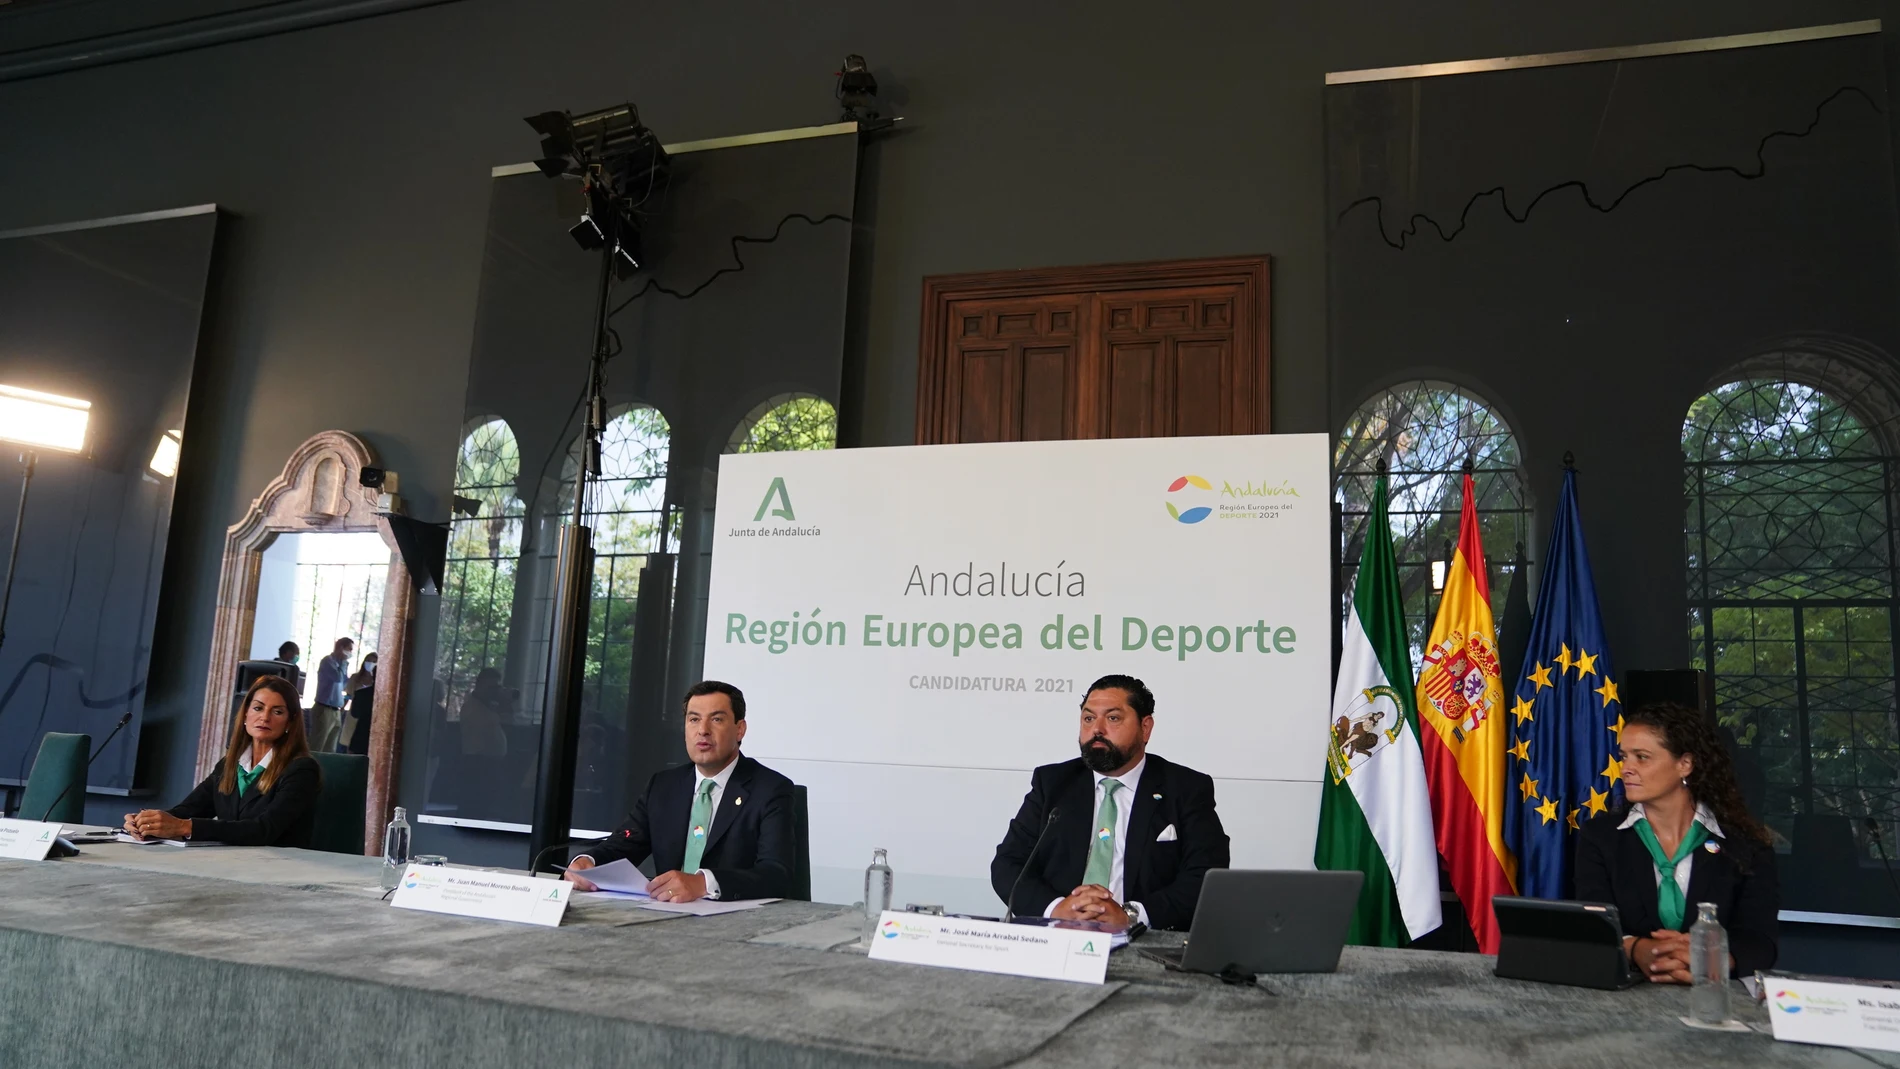 Andalucía, designada como Región Europea del Deporte en 2021